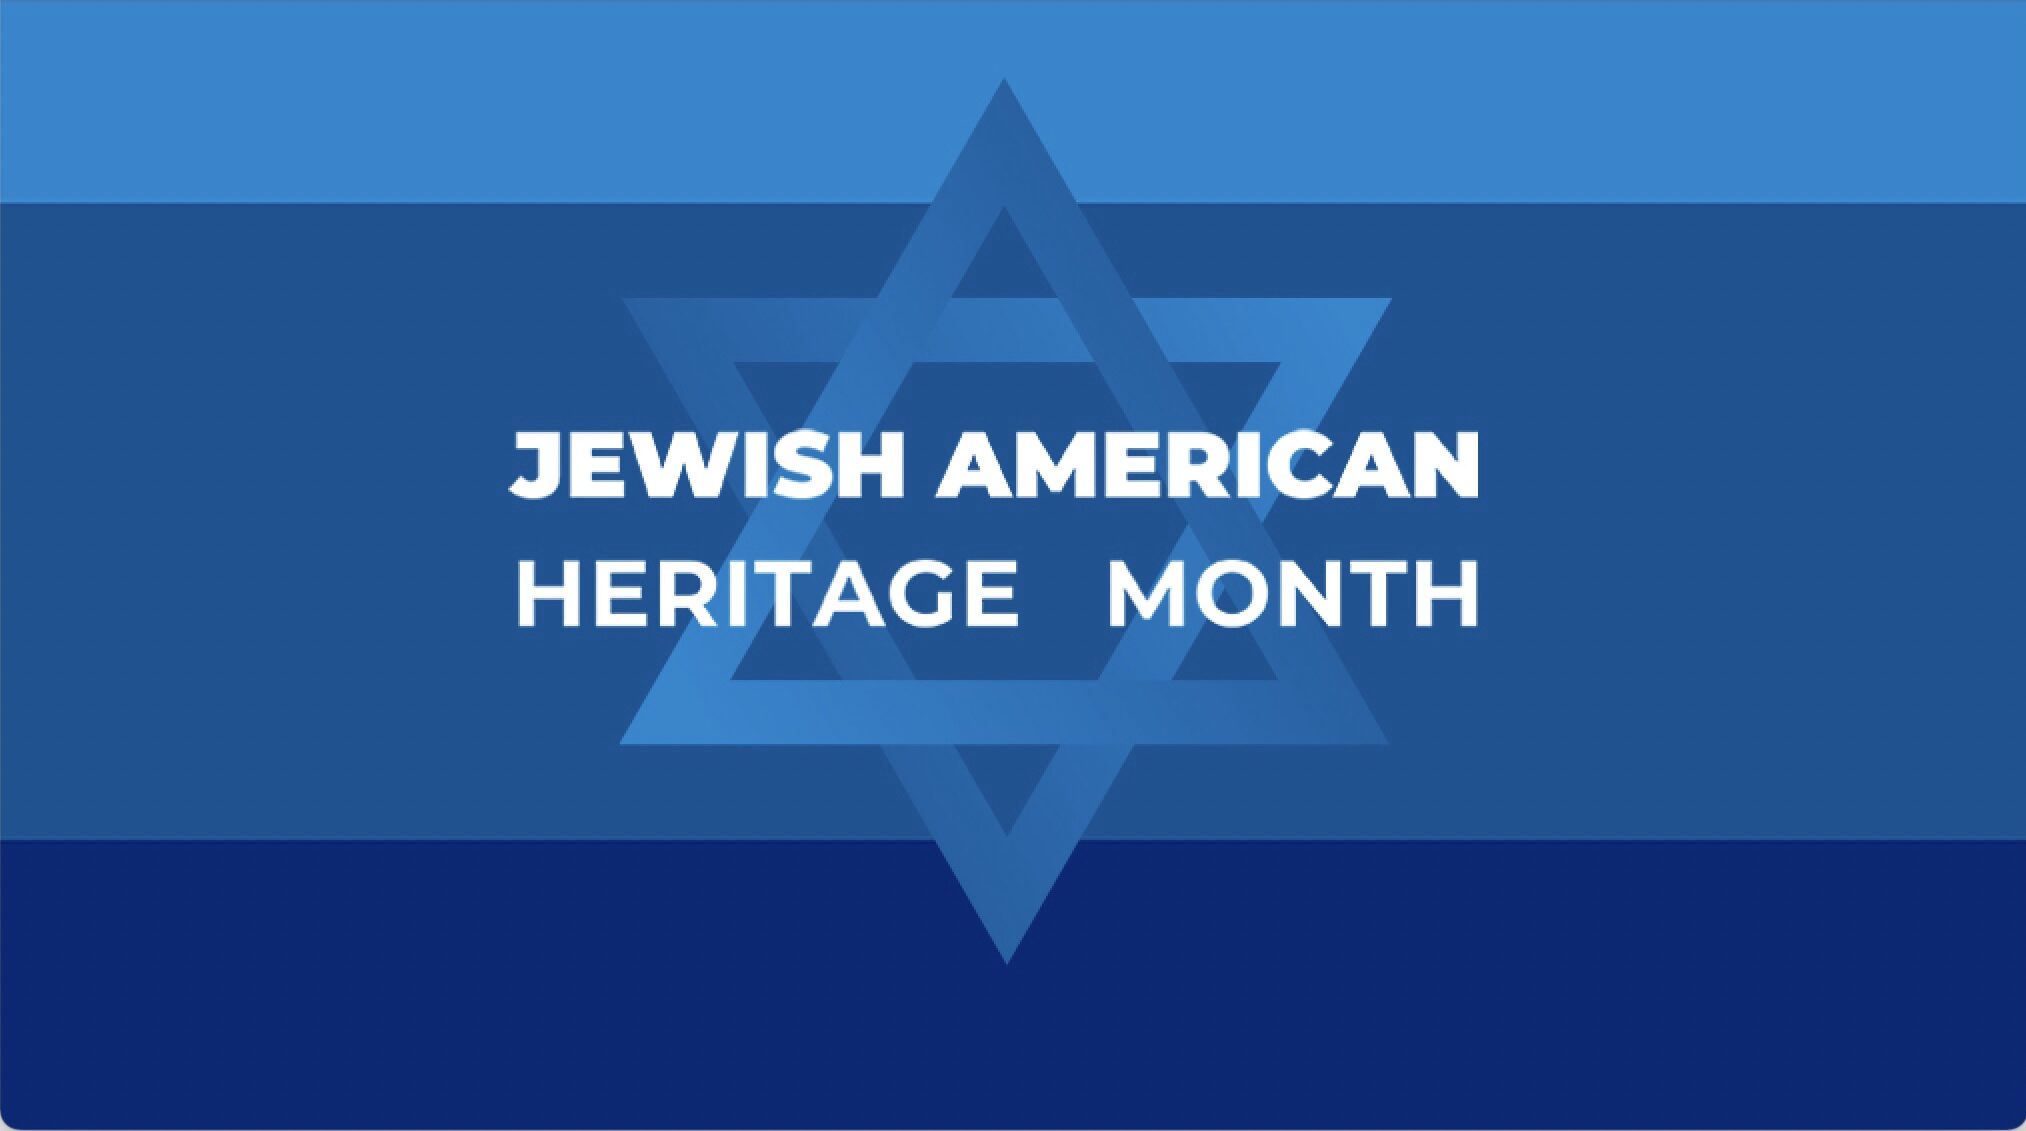 APS: WL манай еврей америк нийгэмлэгийн баярыг тэмдэглэж байна